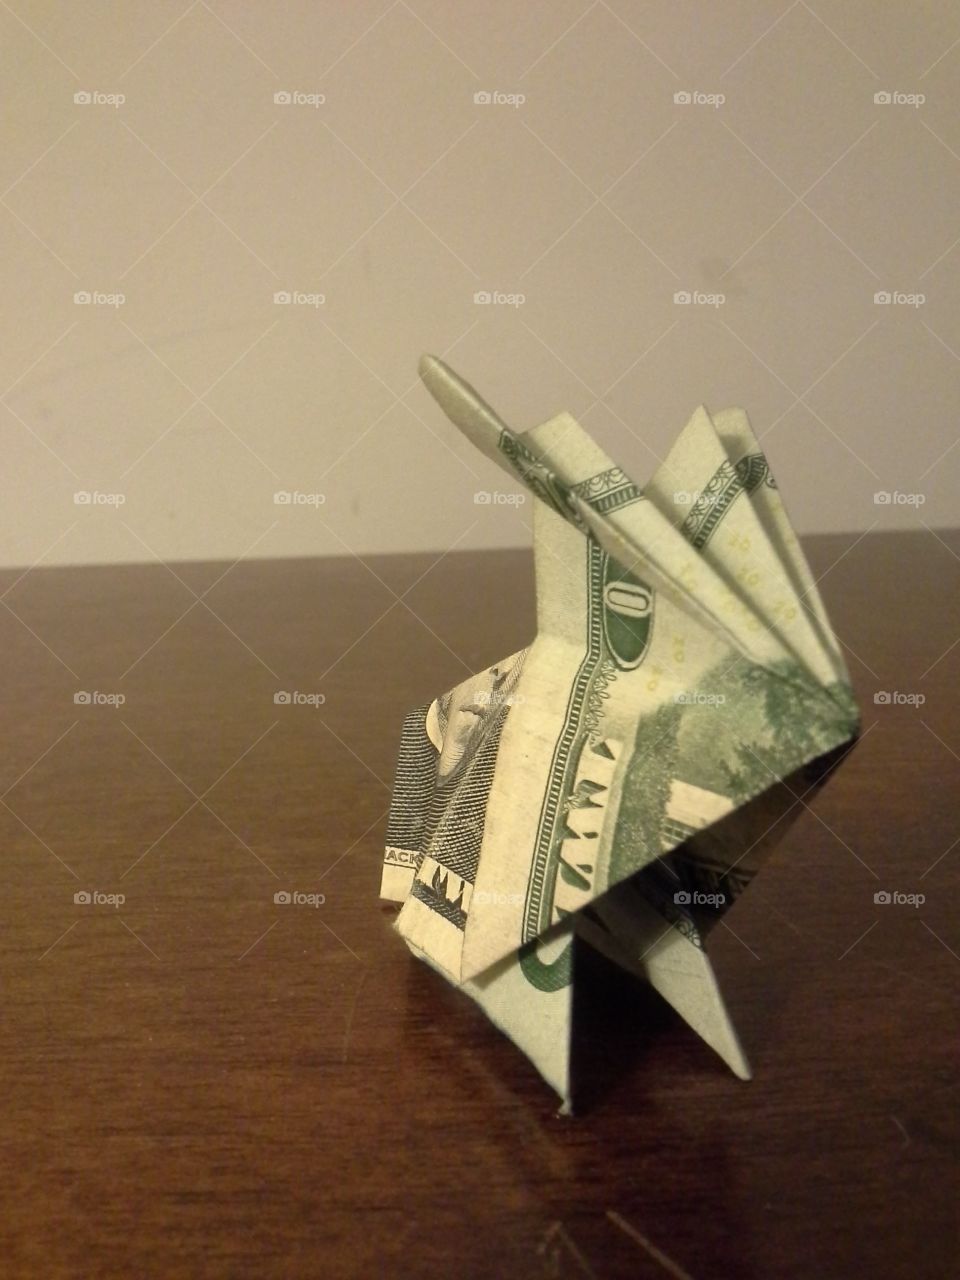 A cute little rabbit made out of a twenty dollar bill